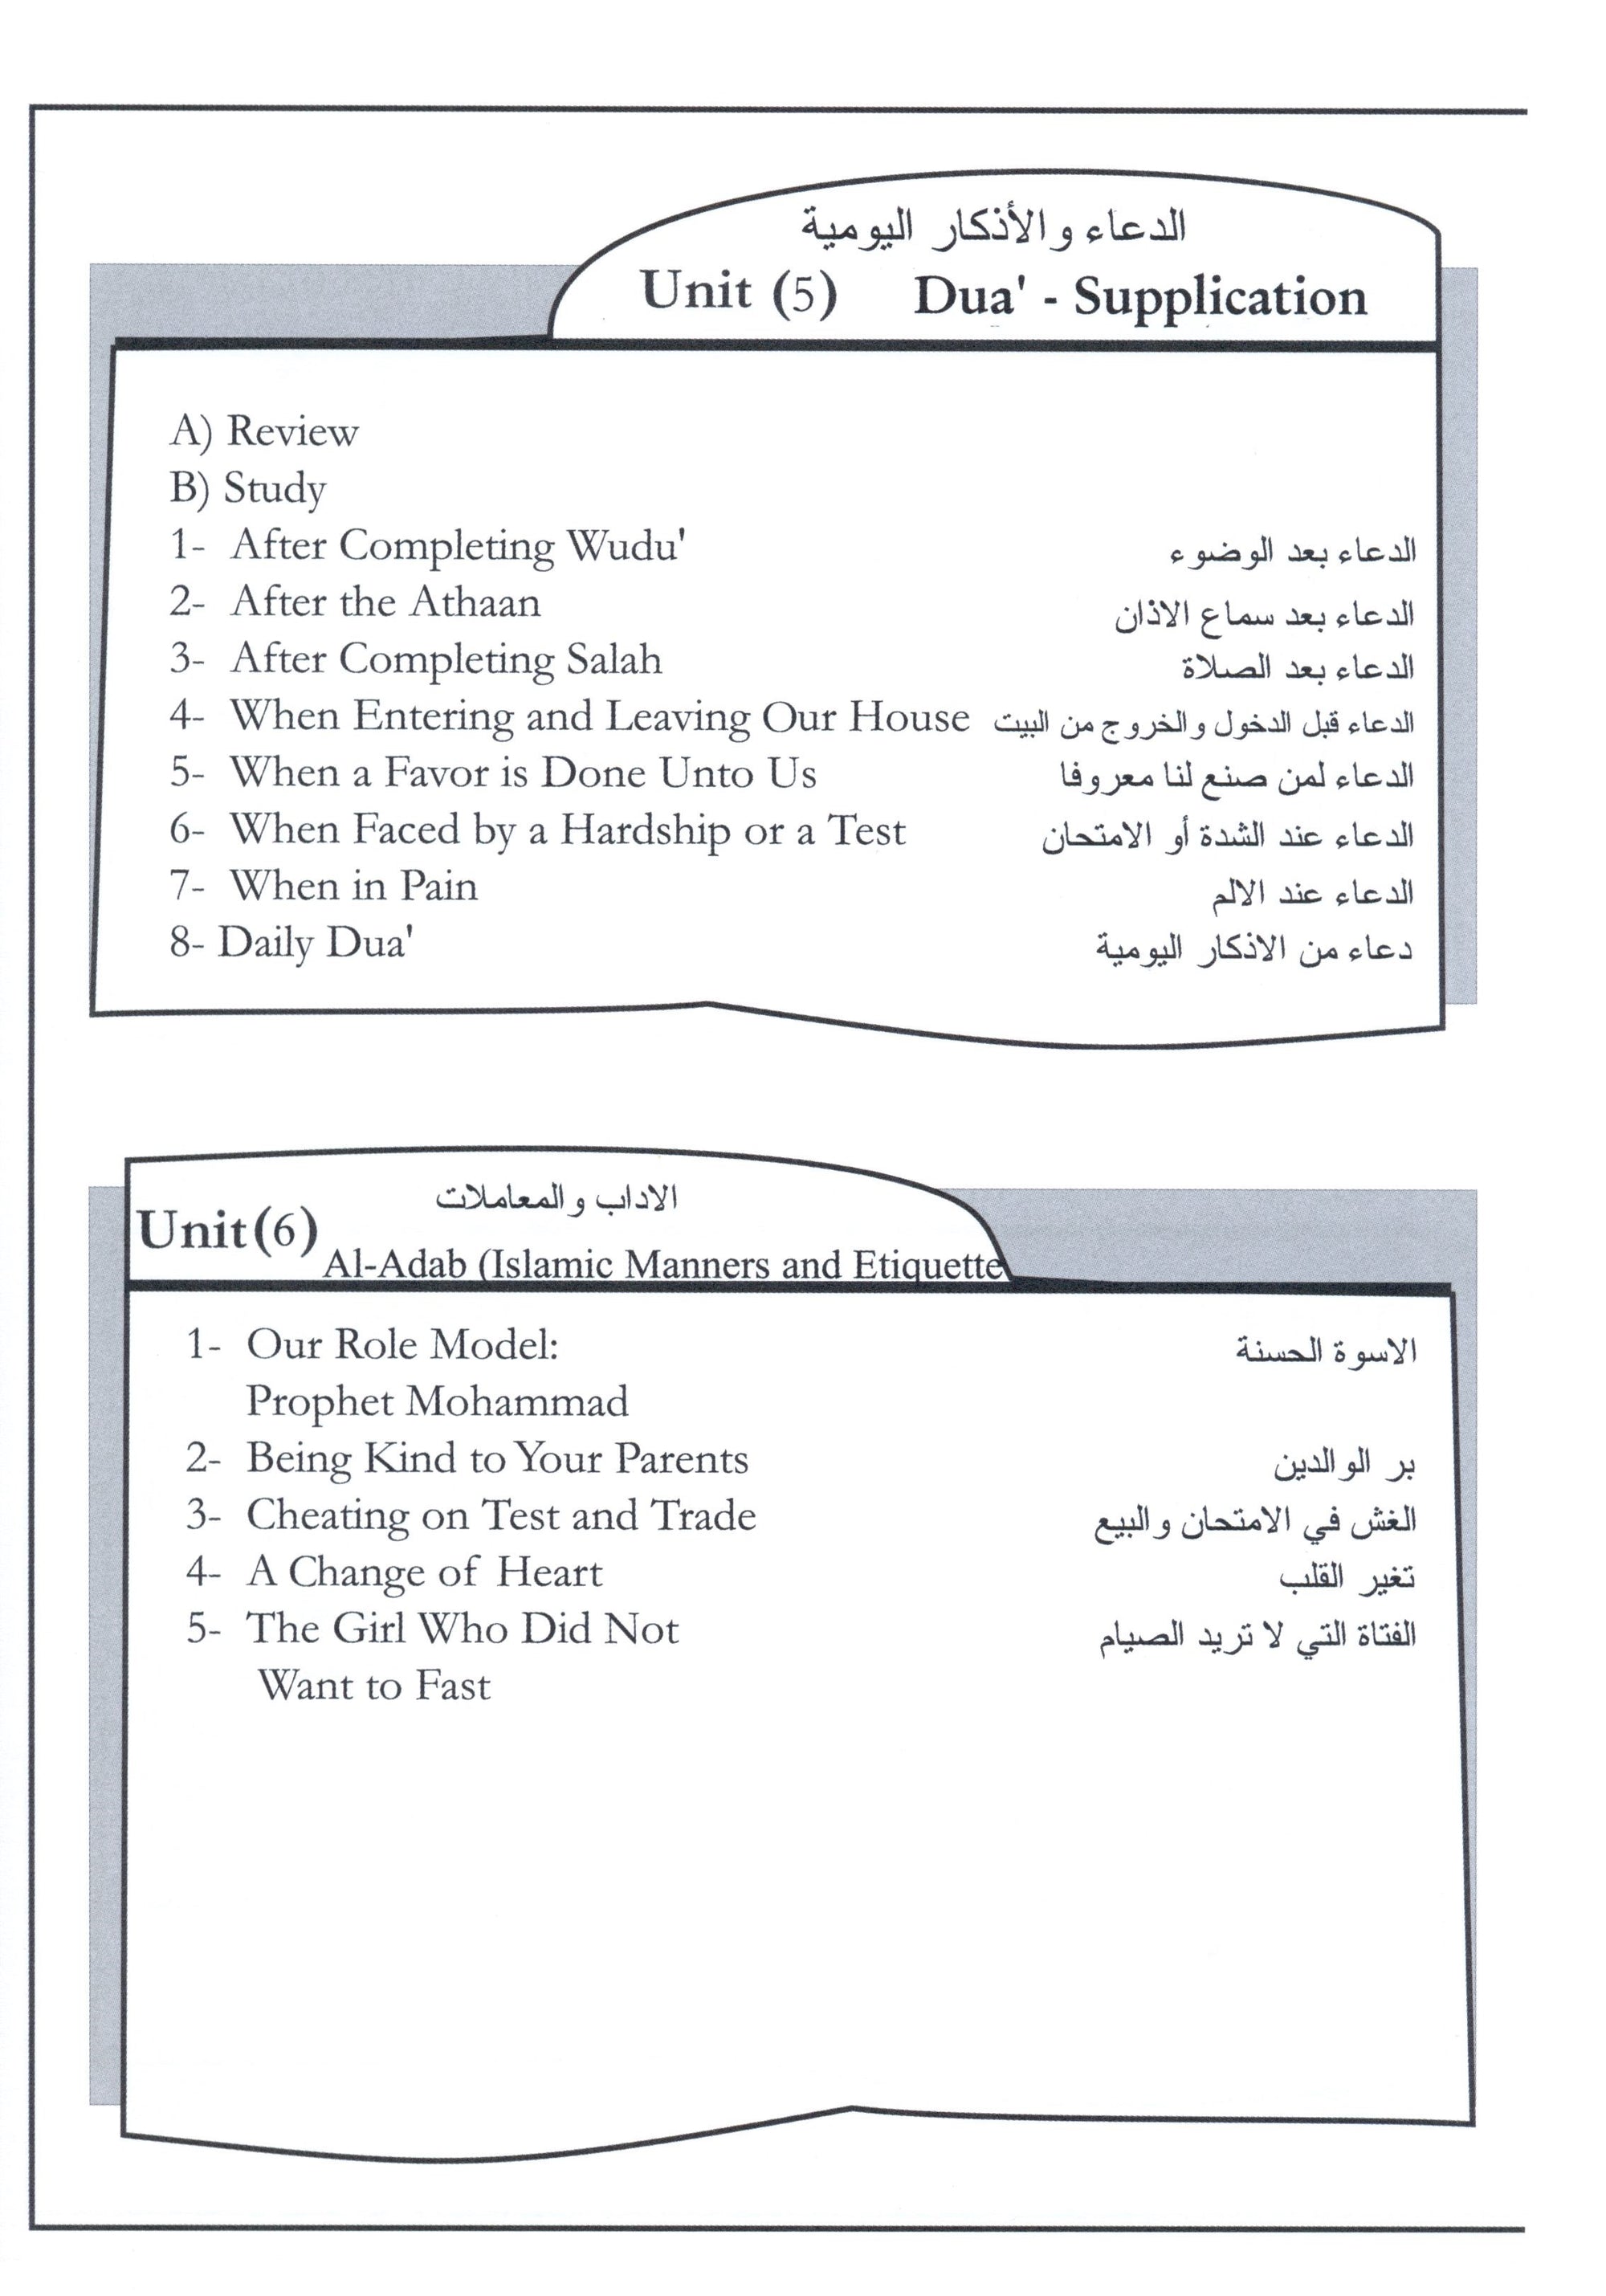 Islamic Education - The Right Path Level 4 التربية الإسلامية